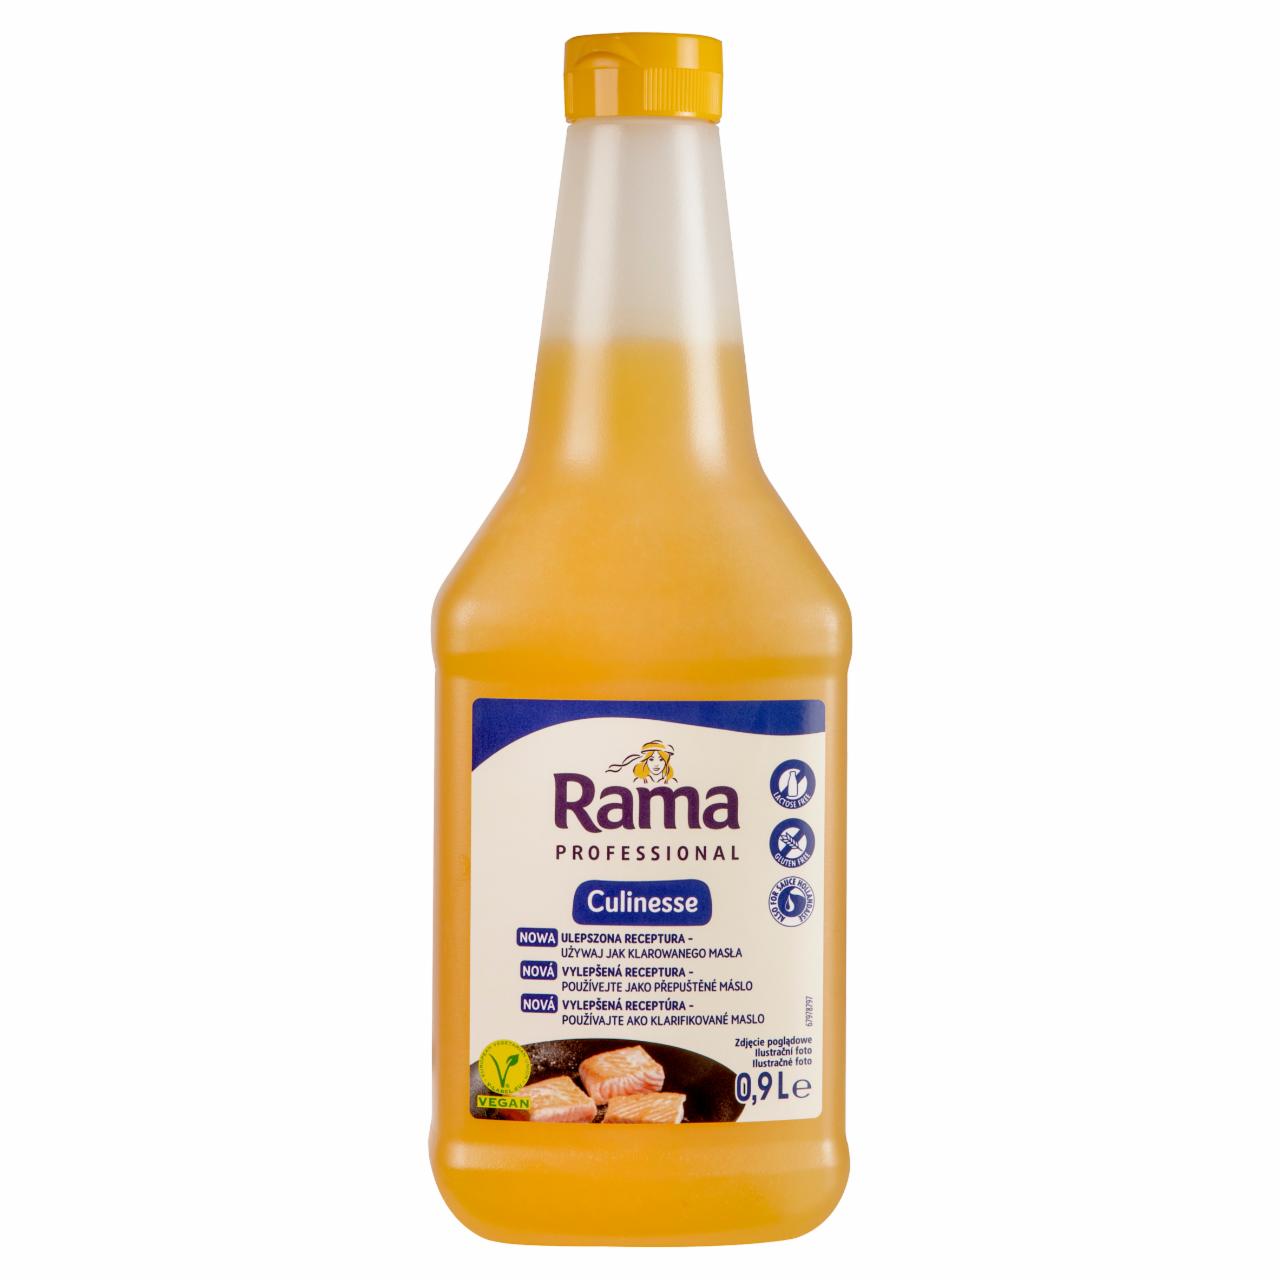 Zdjęcia - Rama Culinesse Płynna mieszanka tłuszczów i olejów roślinnych 0,9 l